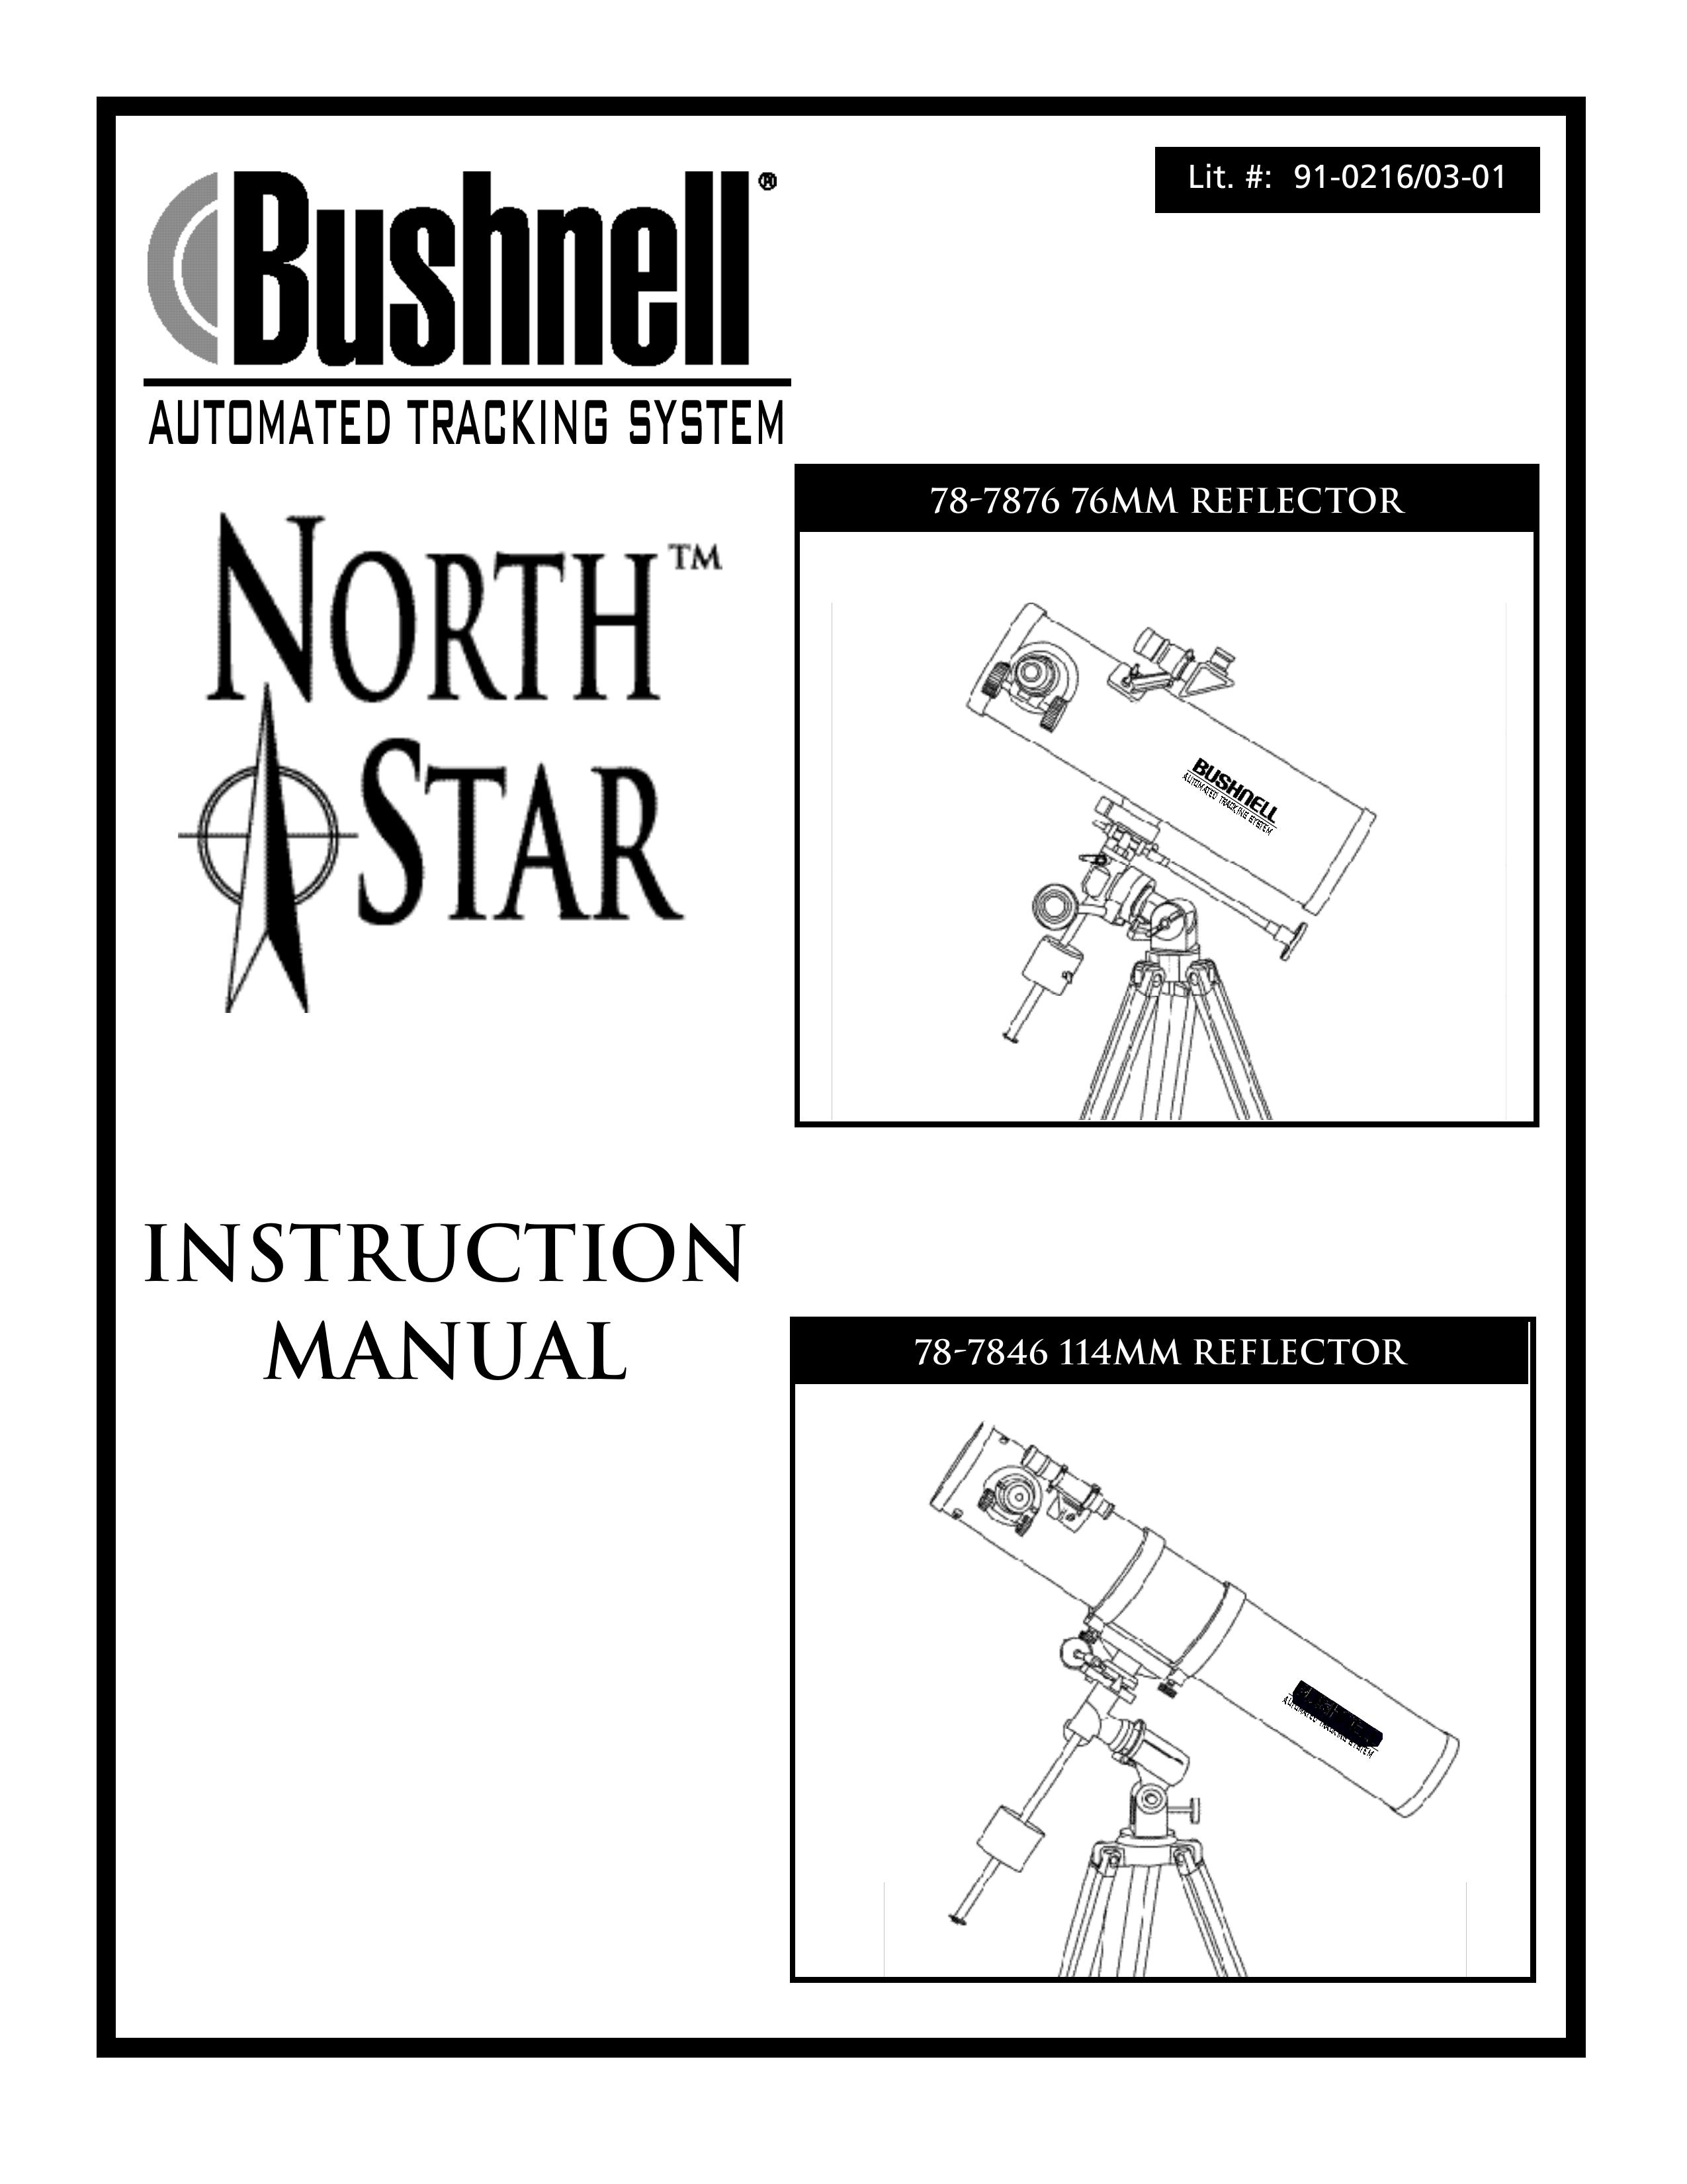 Bushnell 78-7846 Telescope User Manual